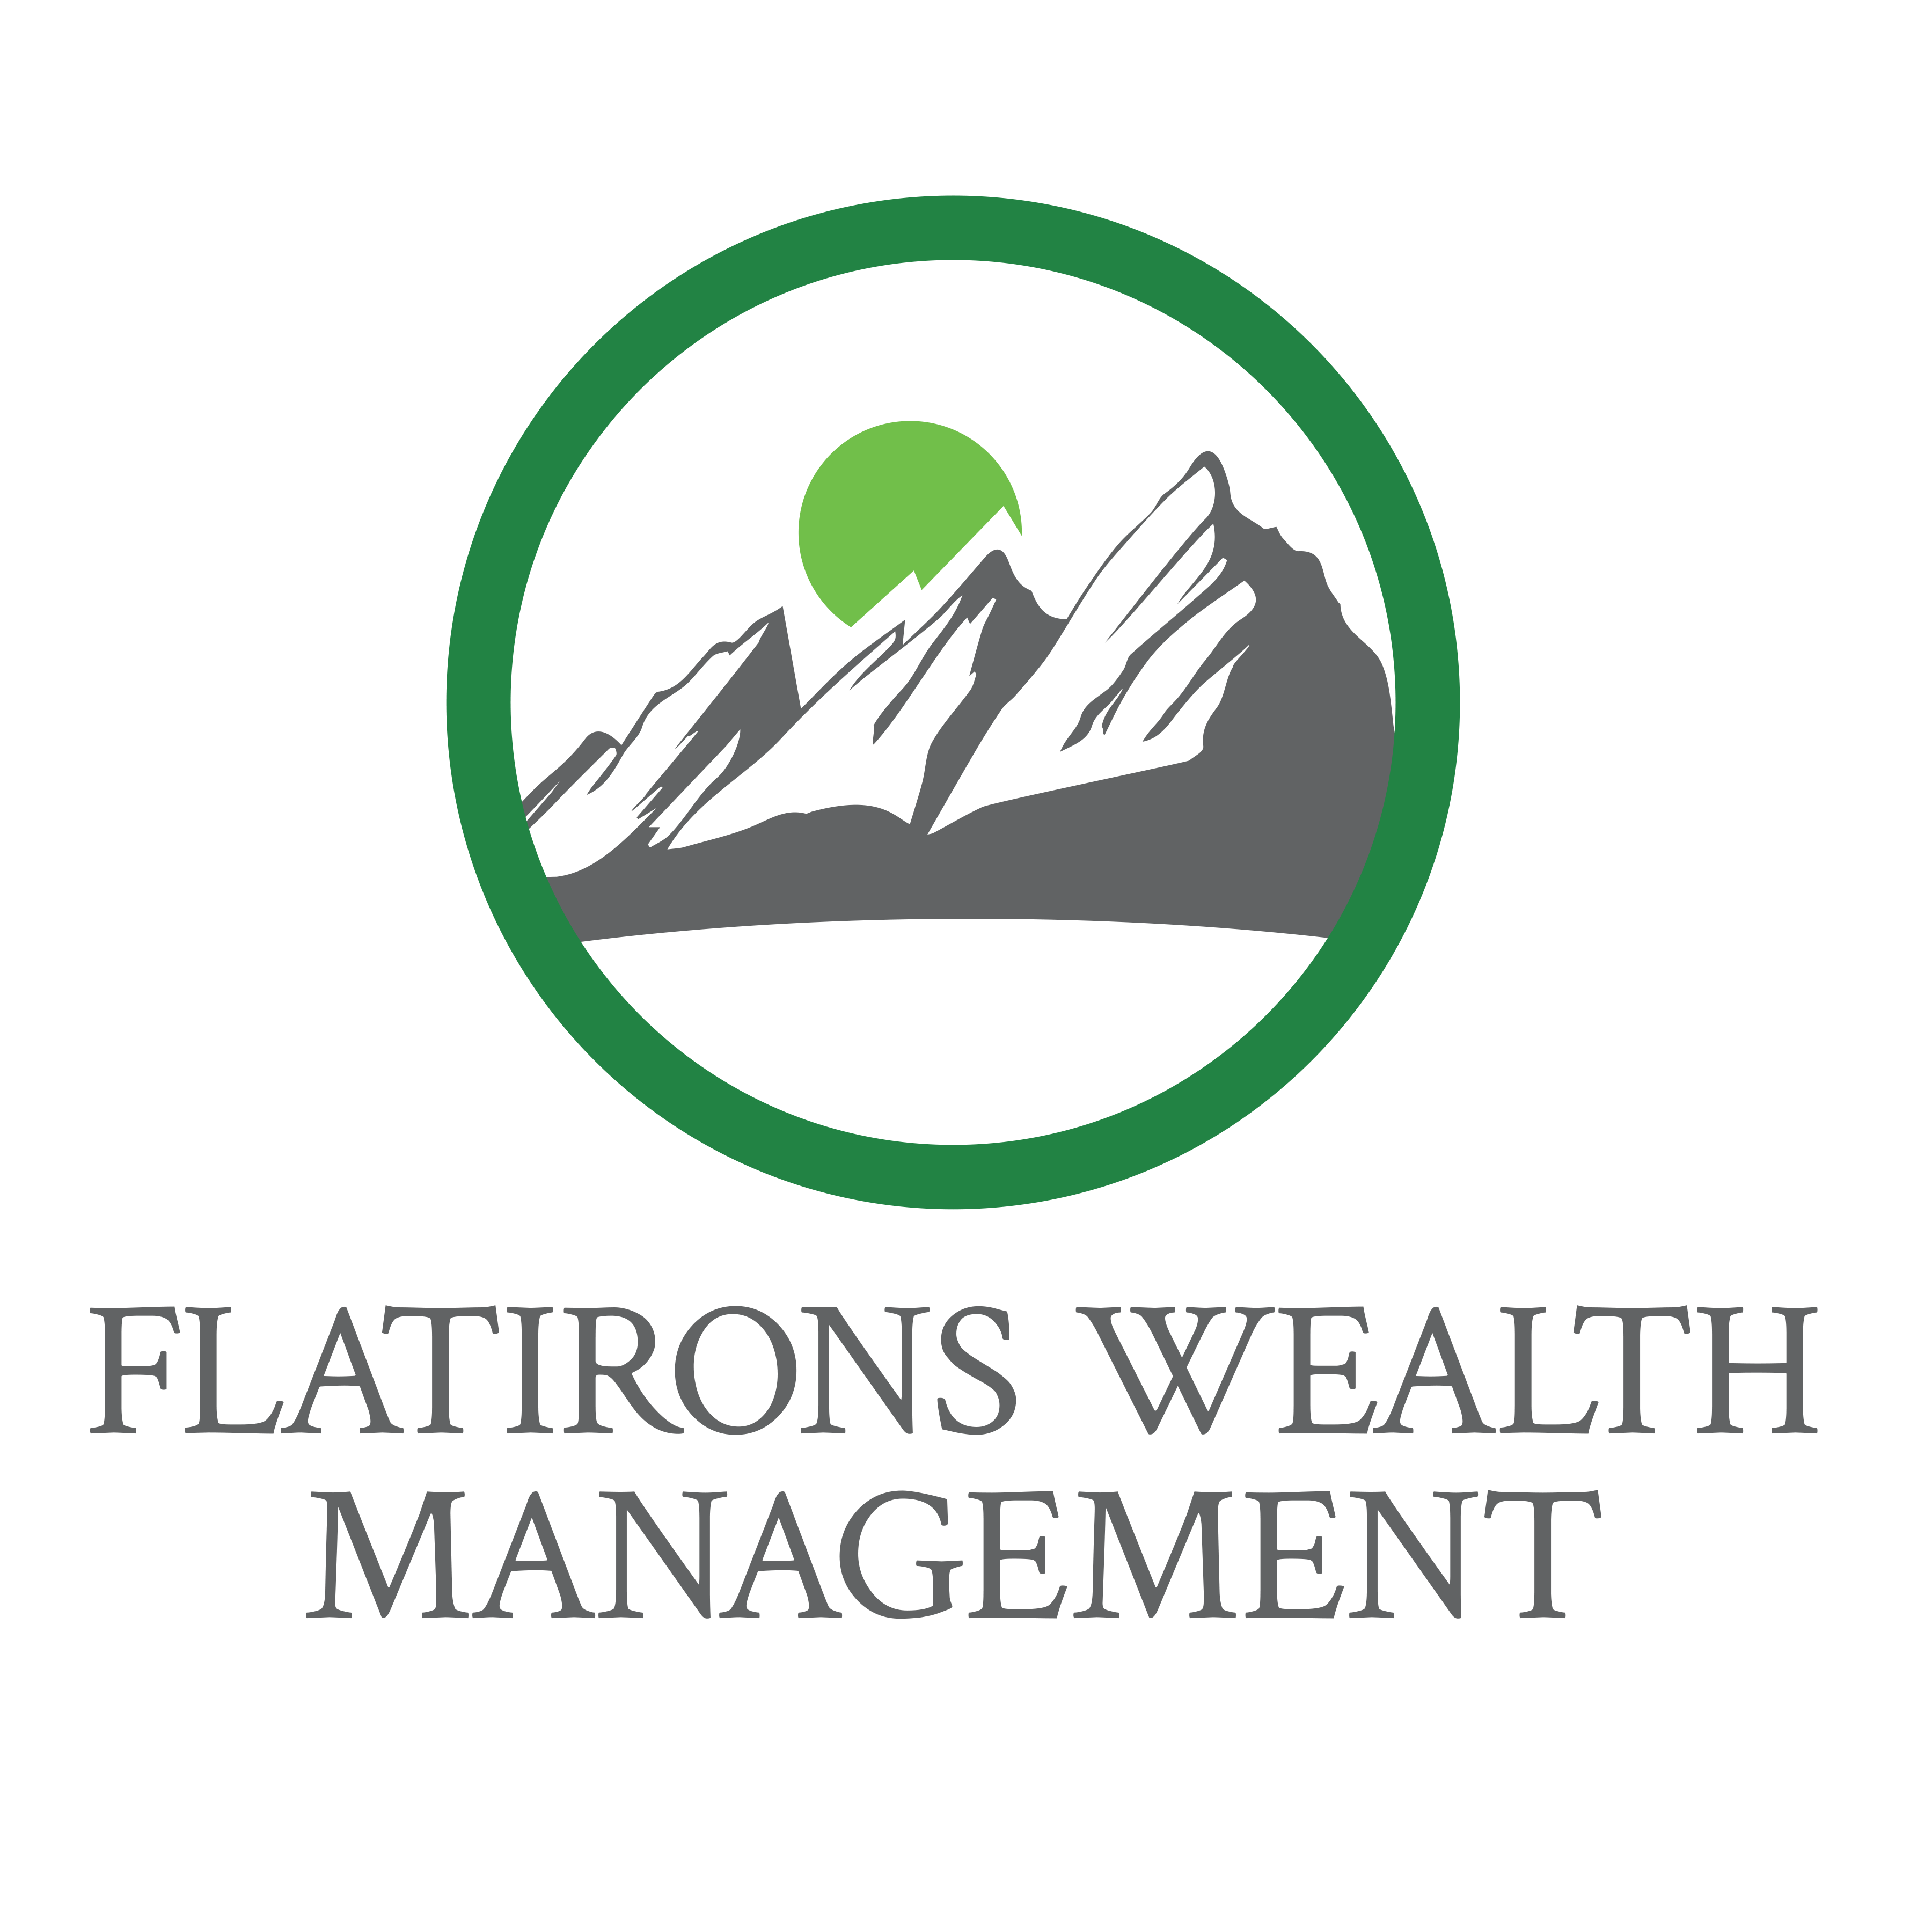 Flatirons Wealth Management